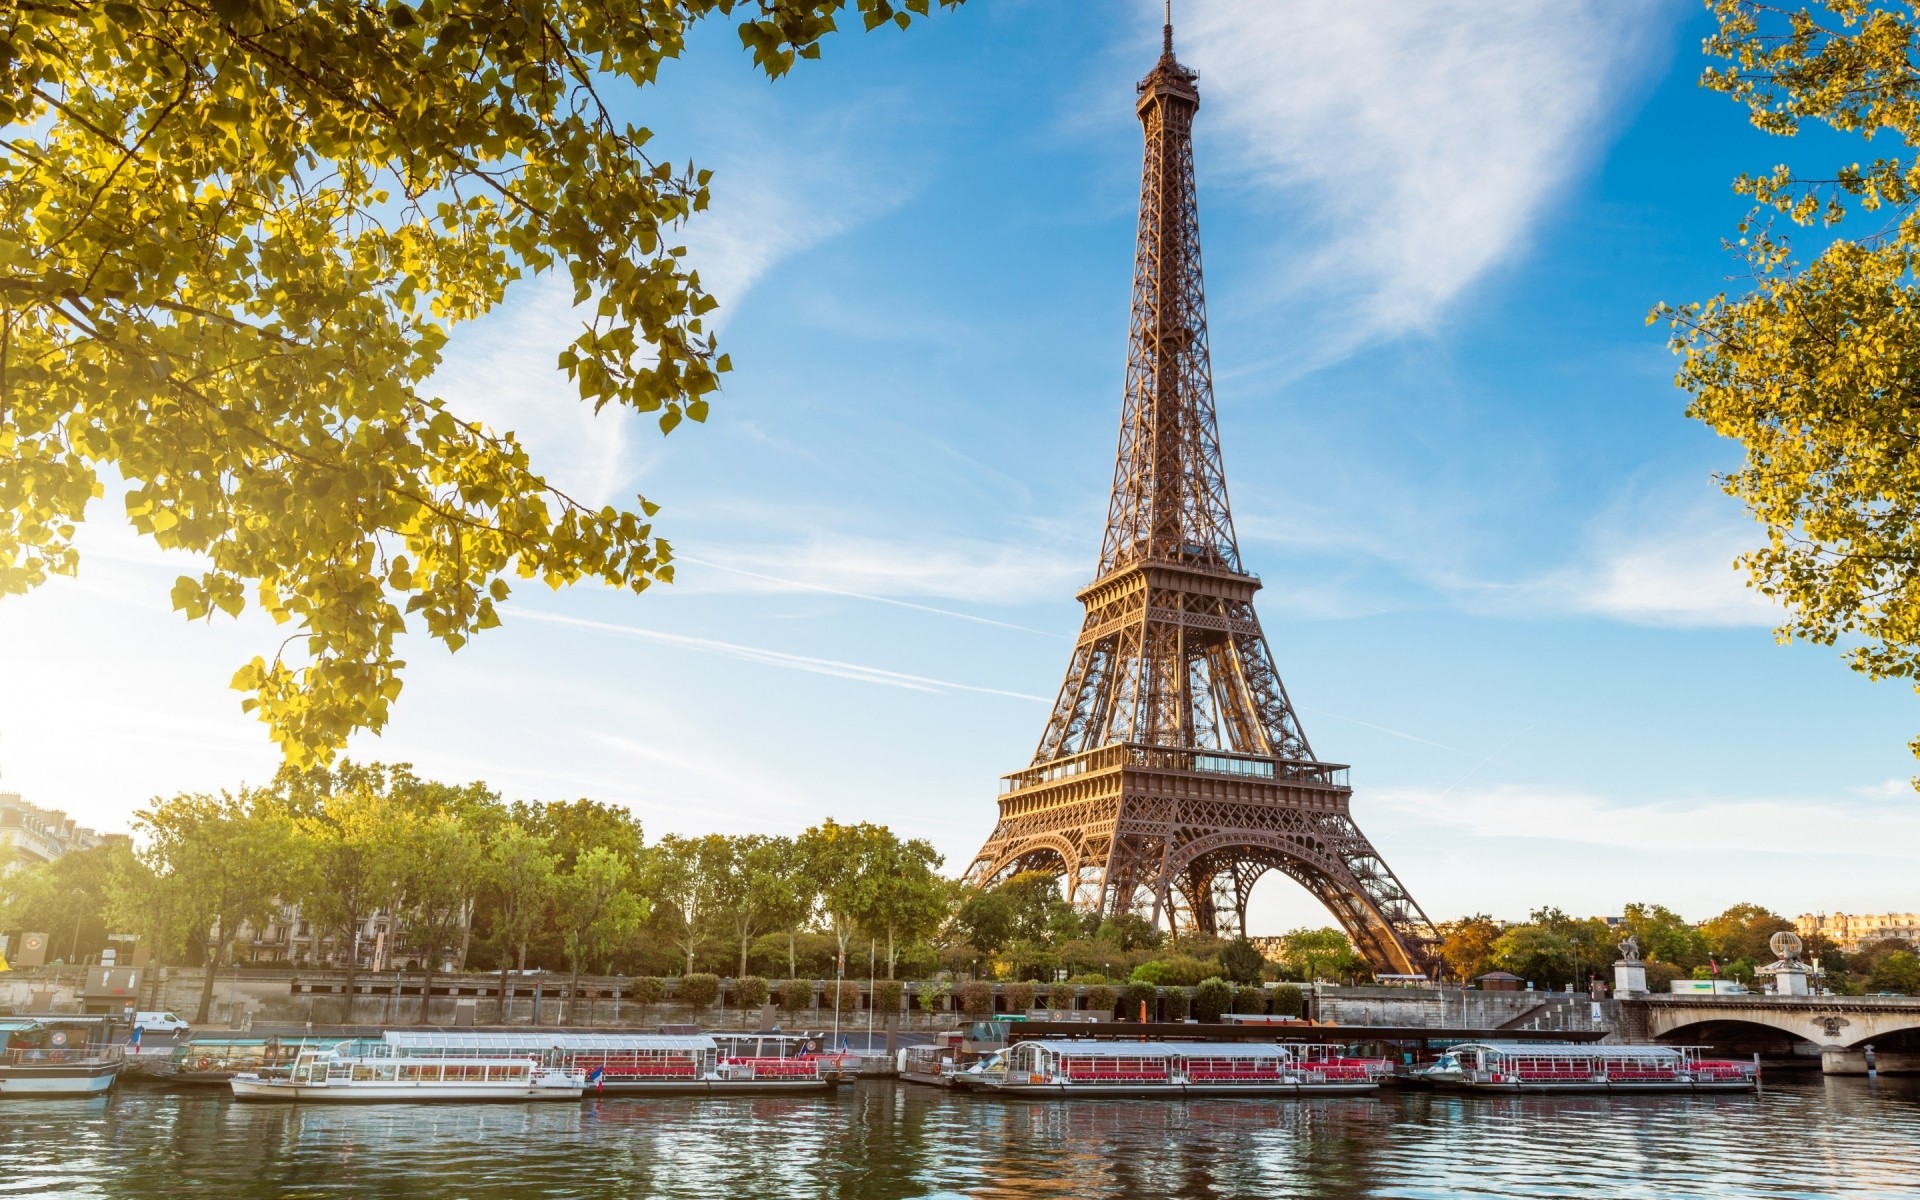 франция архитектура путешествия небо река воды на открытом воздухе дом парк отражение туризм зрелище город эйфелева башня париж